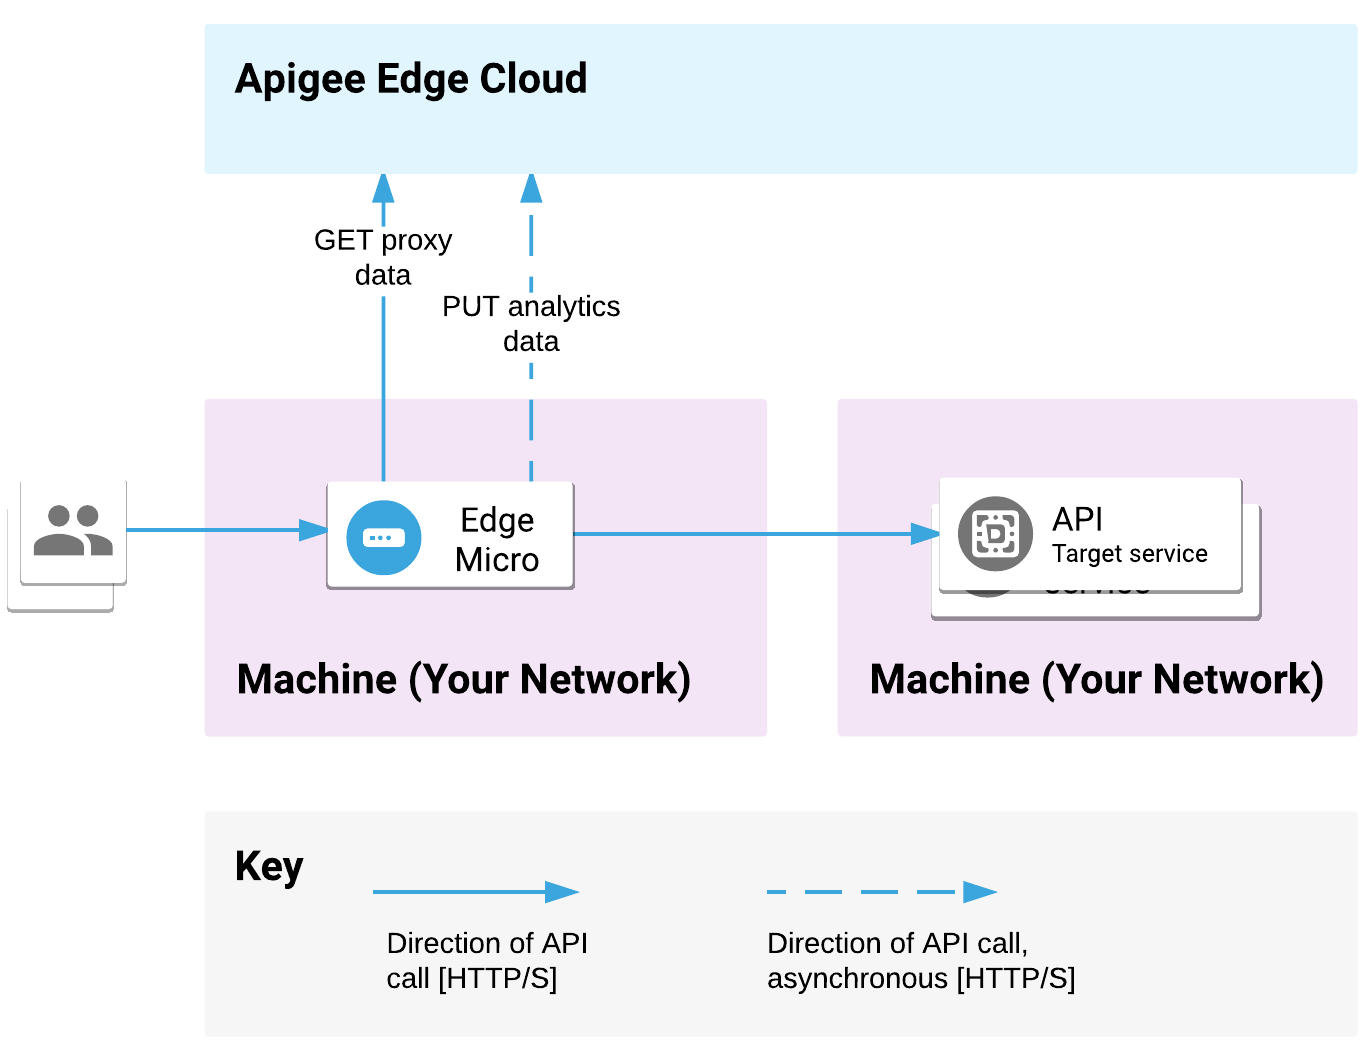 Edge Microgateway đã được gỡ bỏ trên một máy, và các dịch vụ phụ trợ được triển khai ở một vị trí khác. Các yêu cầu API được xử lý qua cổng vào nhỏ và các yêu cầu được gửi đến các mục tiêu phụ trợ. Microgateway giao tiếp dữ liệu proxy và số liệu phân tích bằng Apigee Edge Cloud.